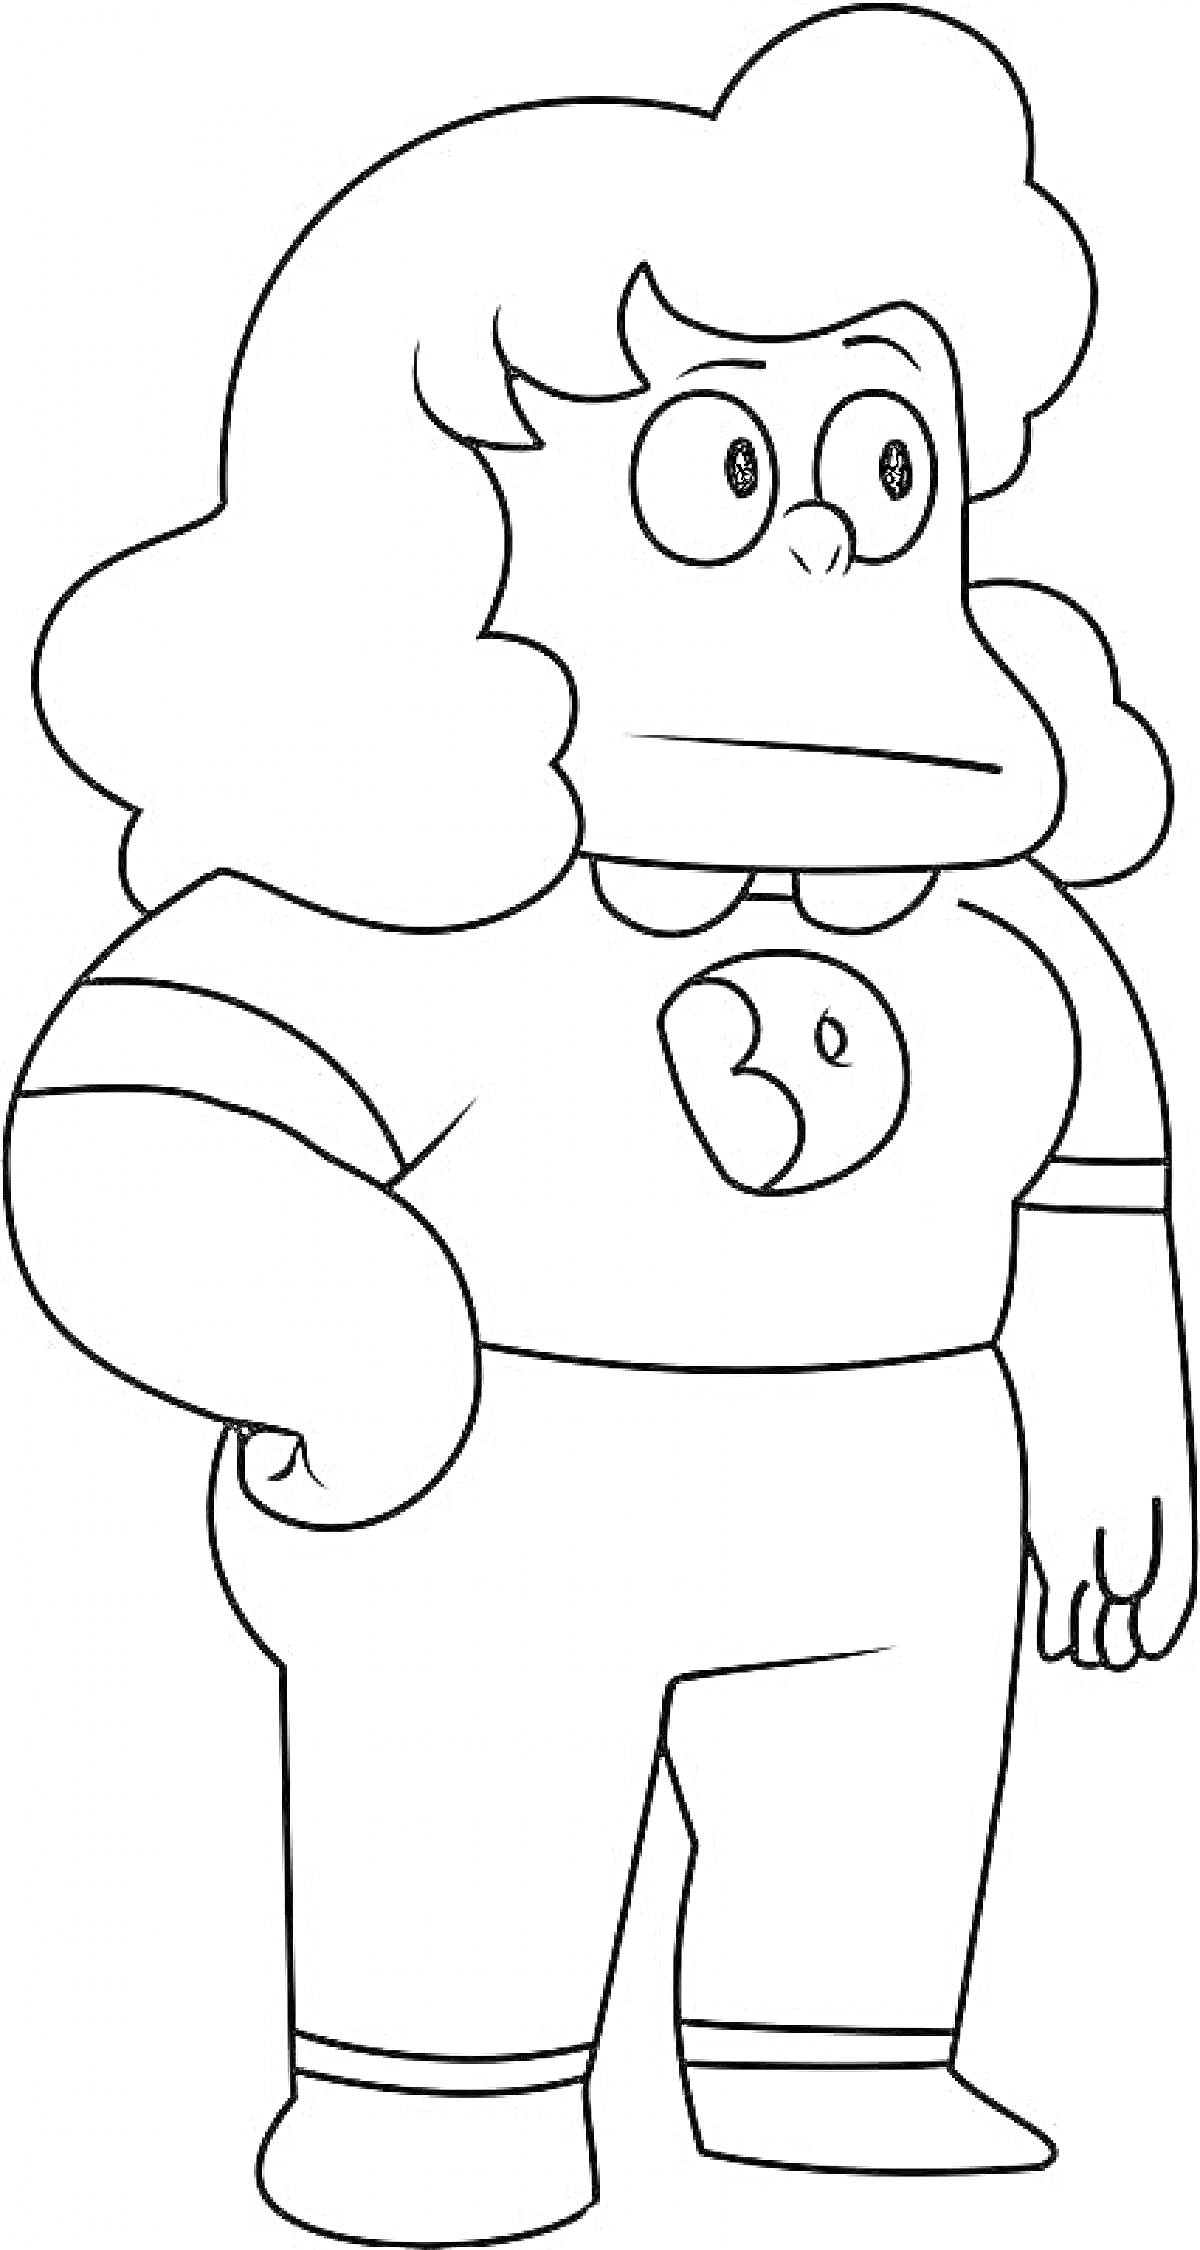 Раскраска Женский персонаж из Вселенной Стивена с кудрявыми волосами, в футболке с логотипом и брюках